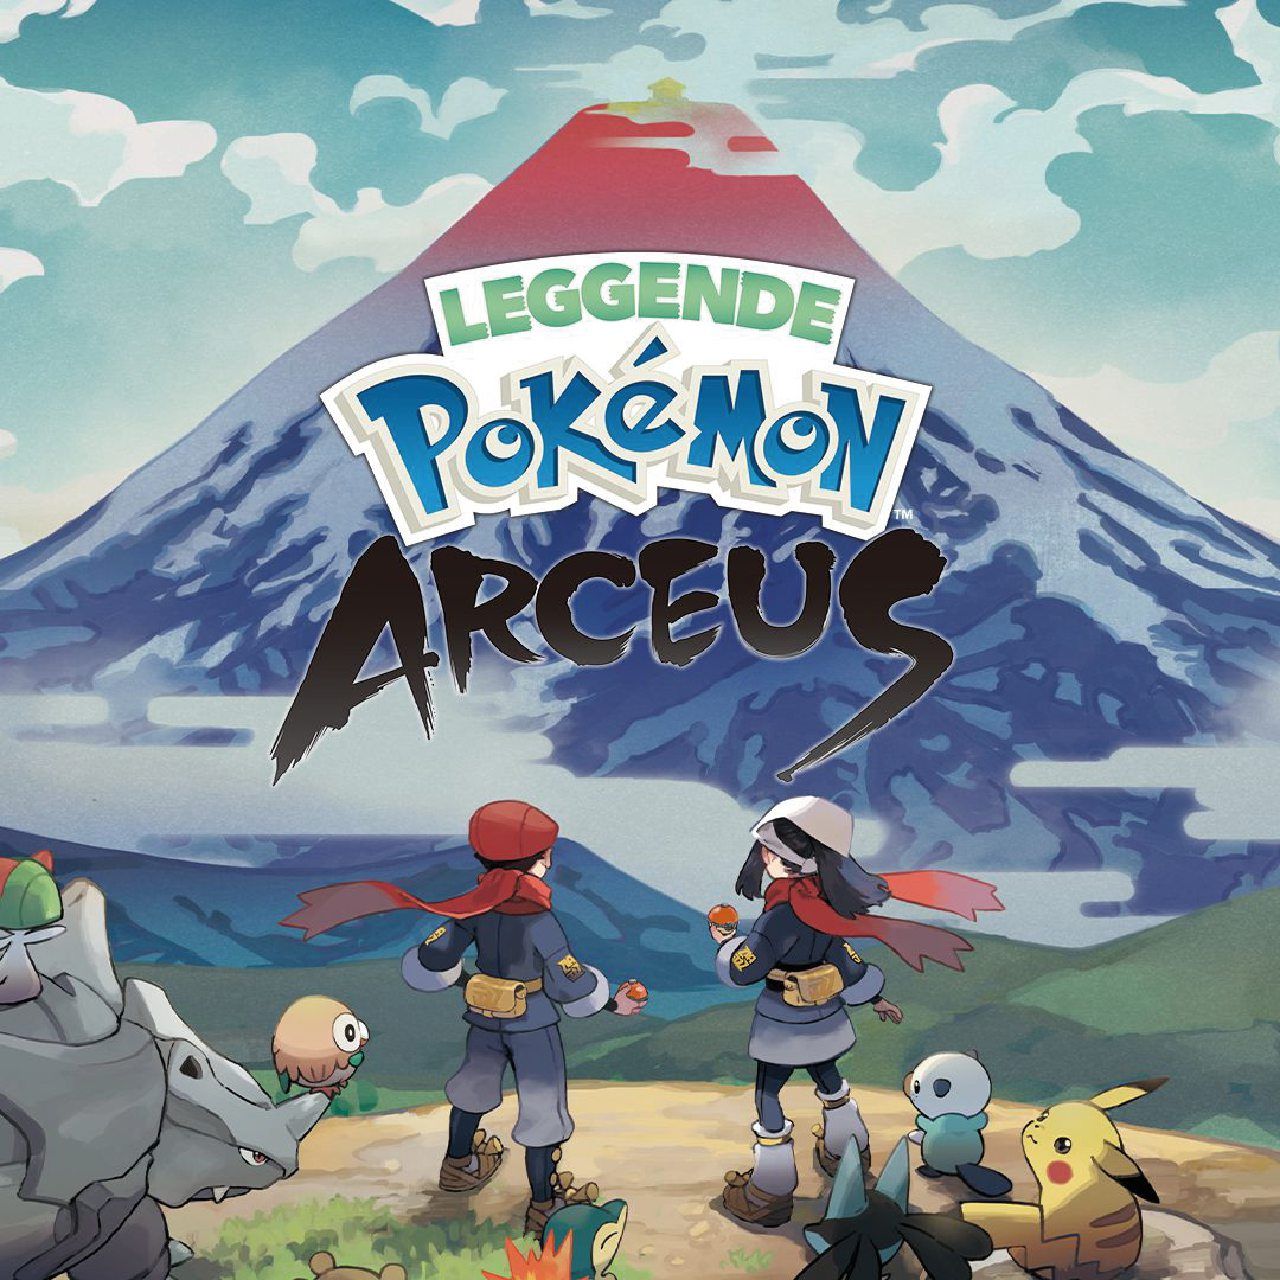 Pokémon Legends: Arceus e gli altri videogiochi in uscita nel 2022 - immagine 2